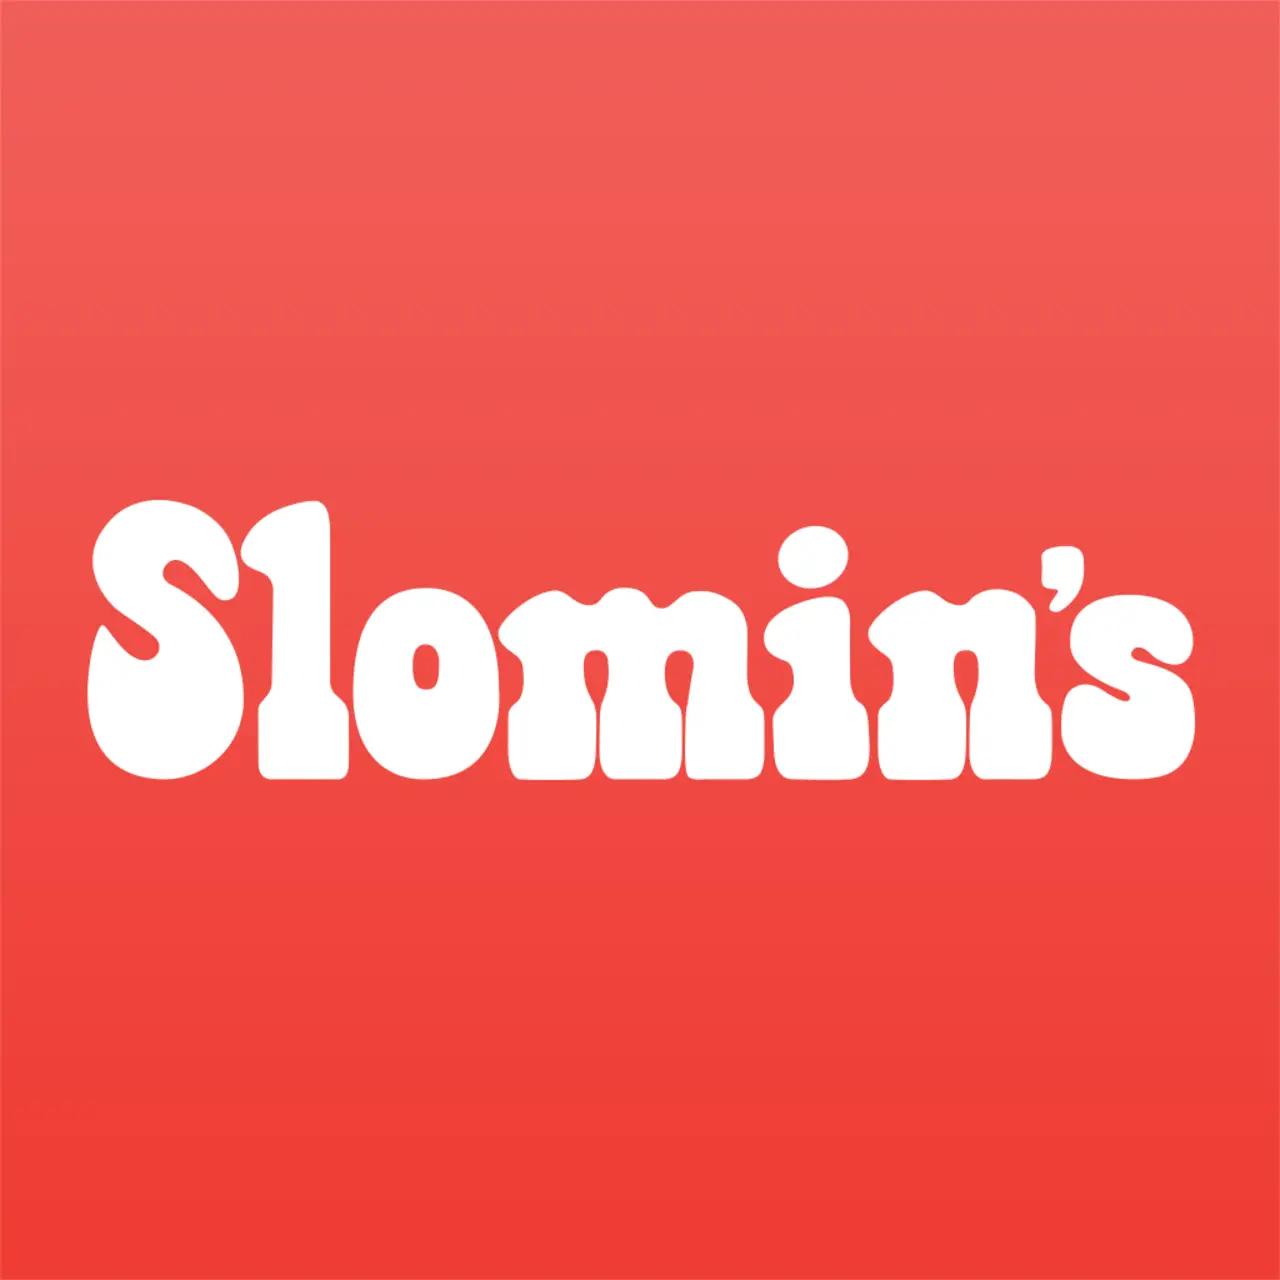 Slomin’s, Inc.の画像